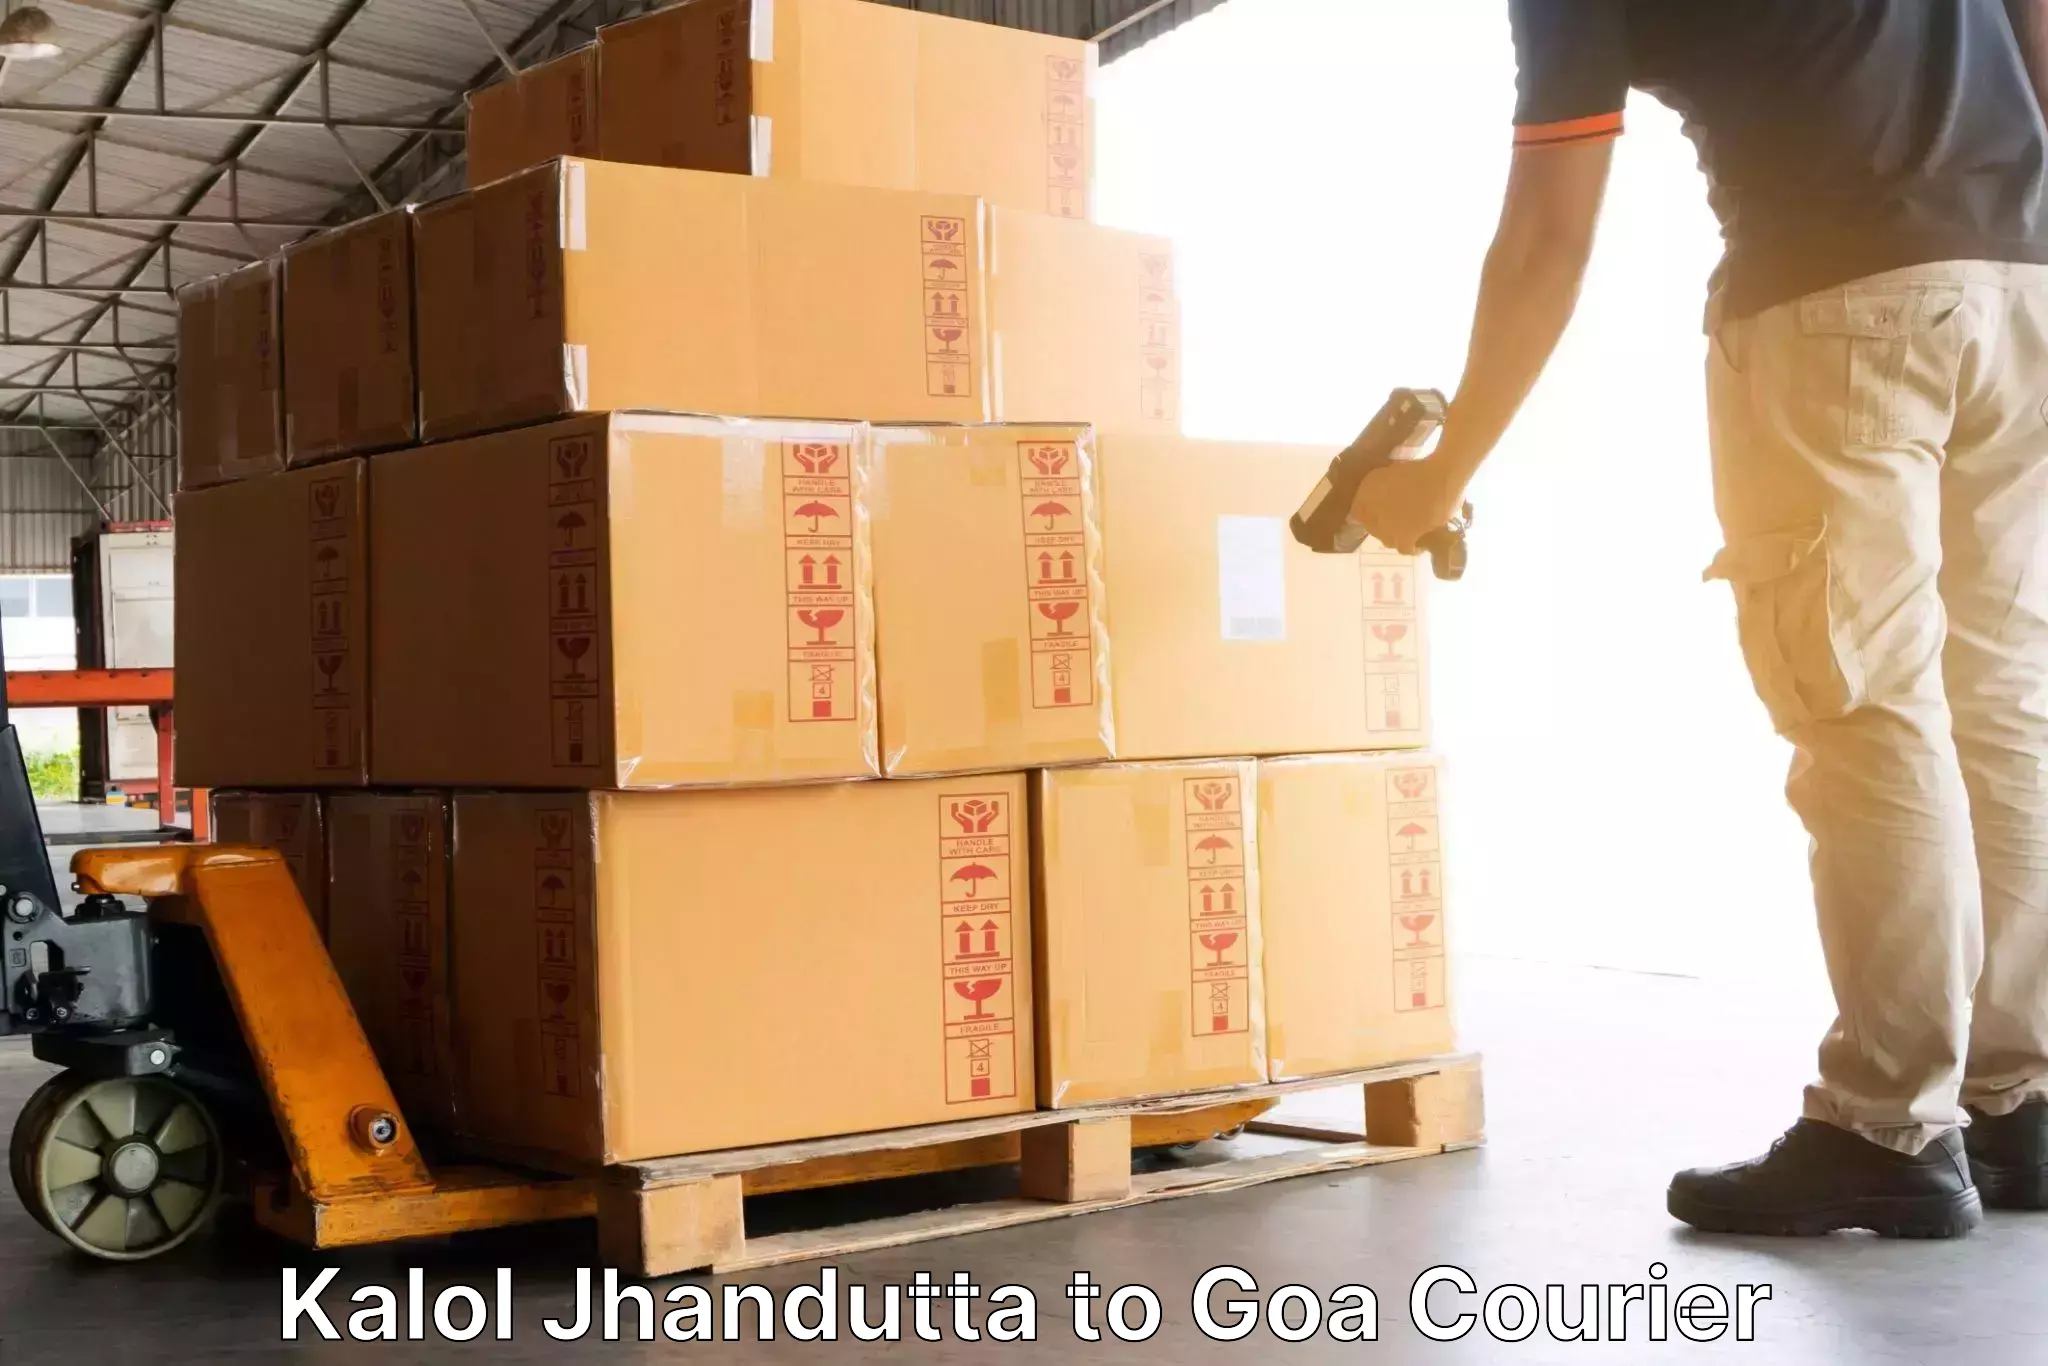 Courier service comparison in Kalol Jhandutta to Panaji